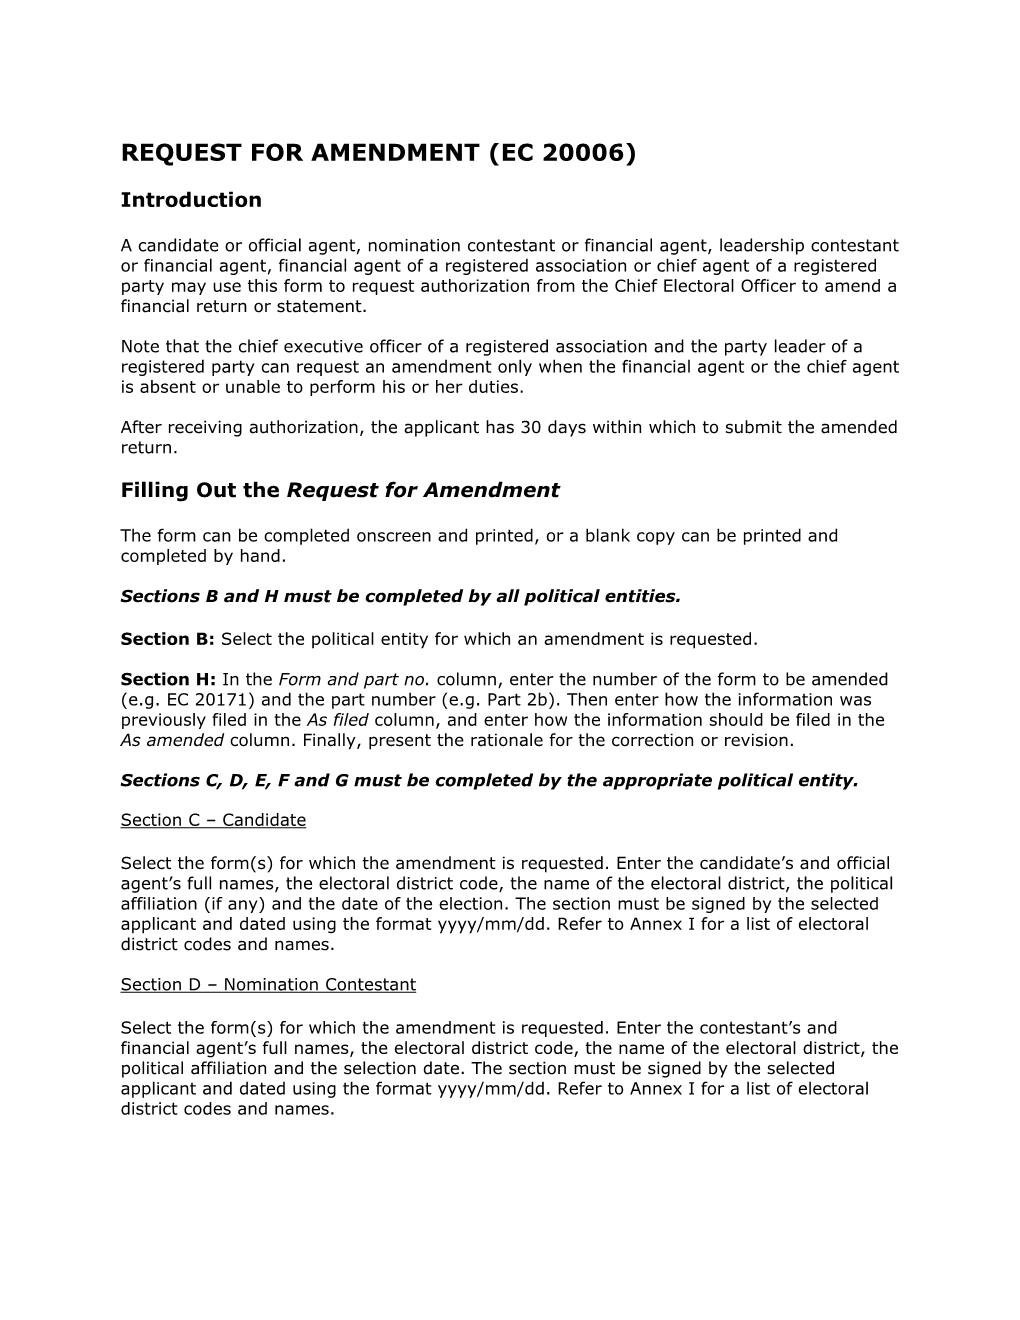 Request for Amendment (Ec 20006)